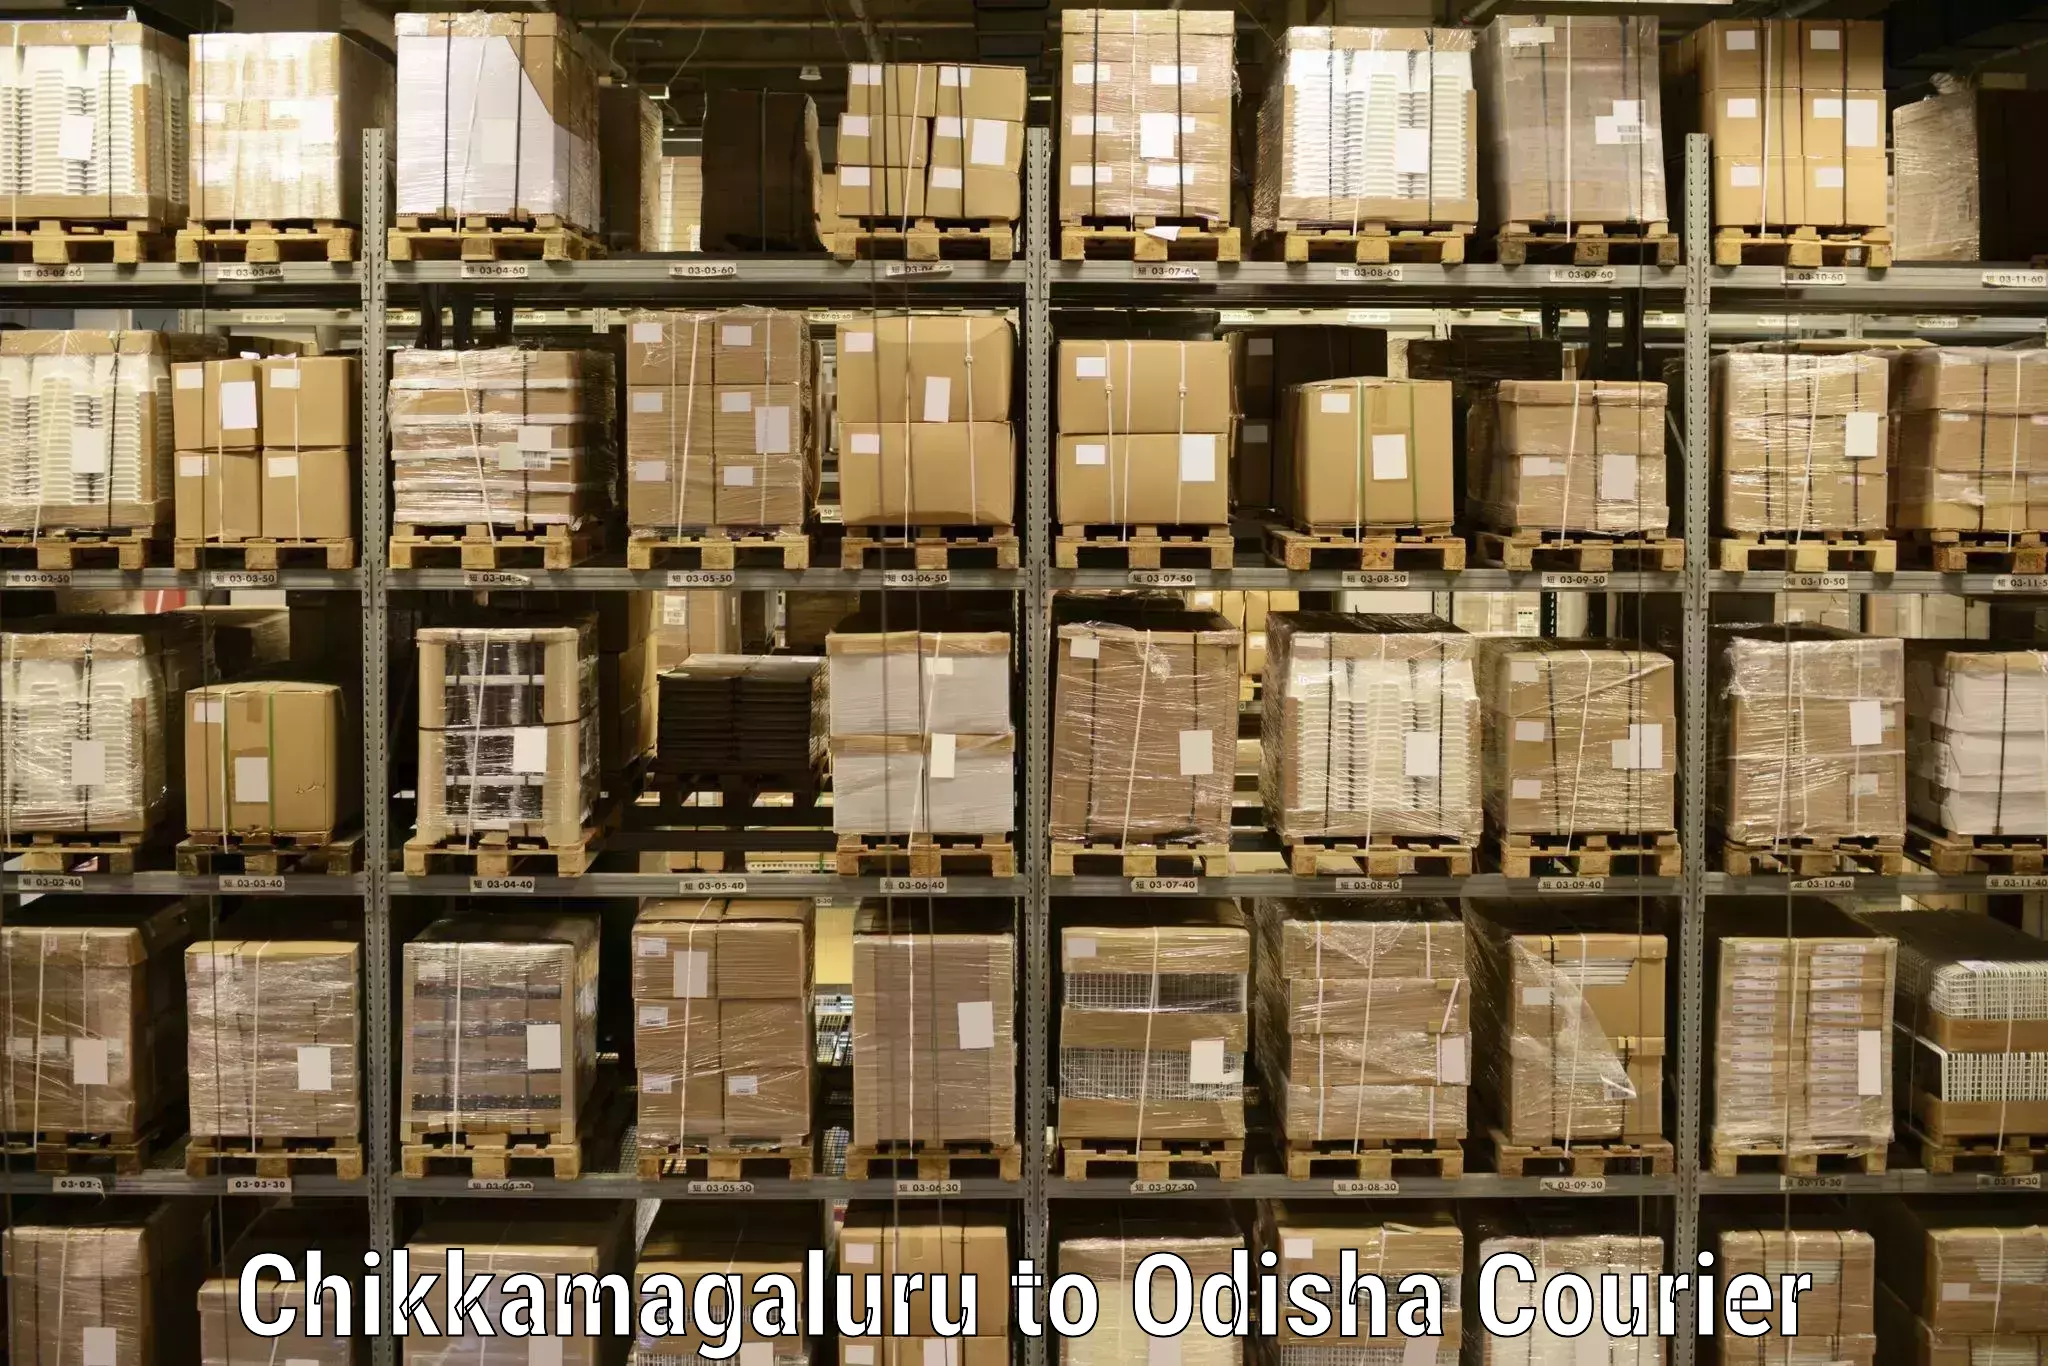 Advanced logistics management Chikkamagaluru to Sohela